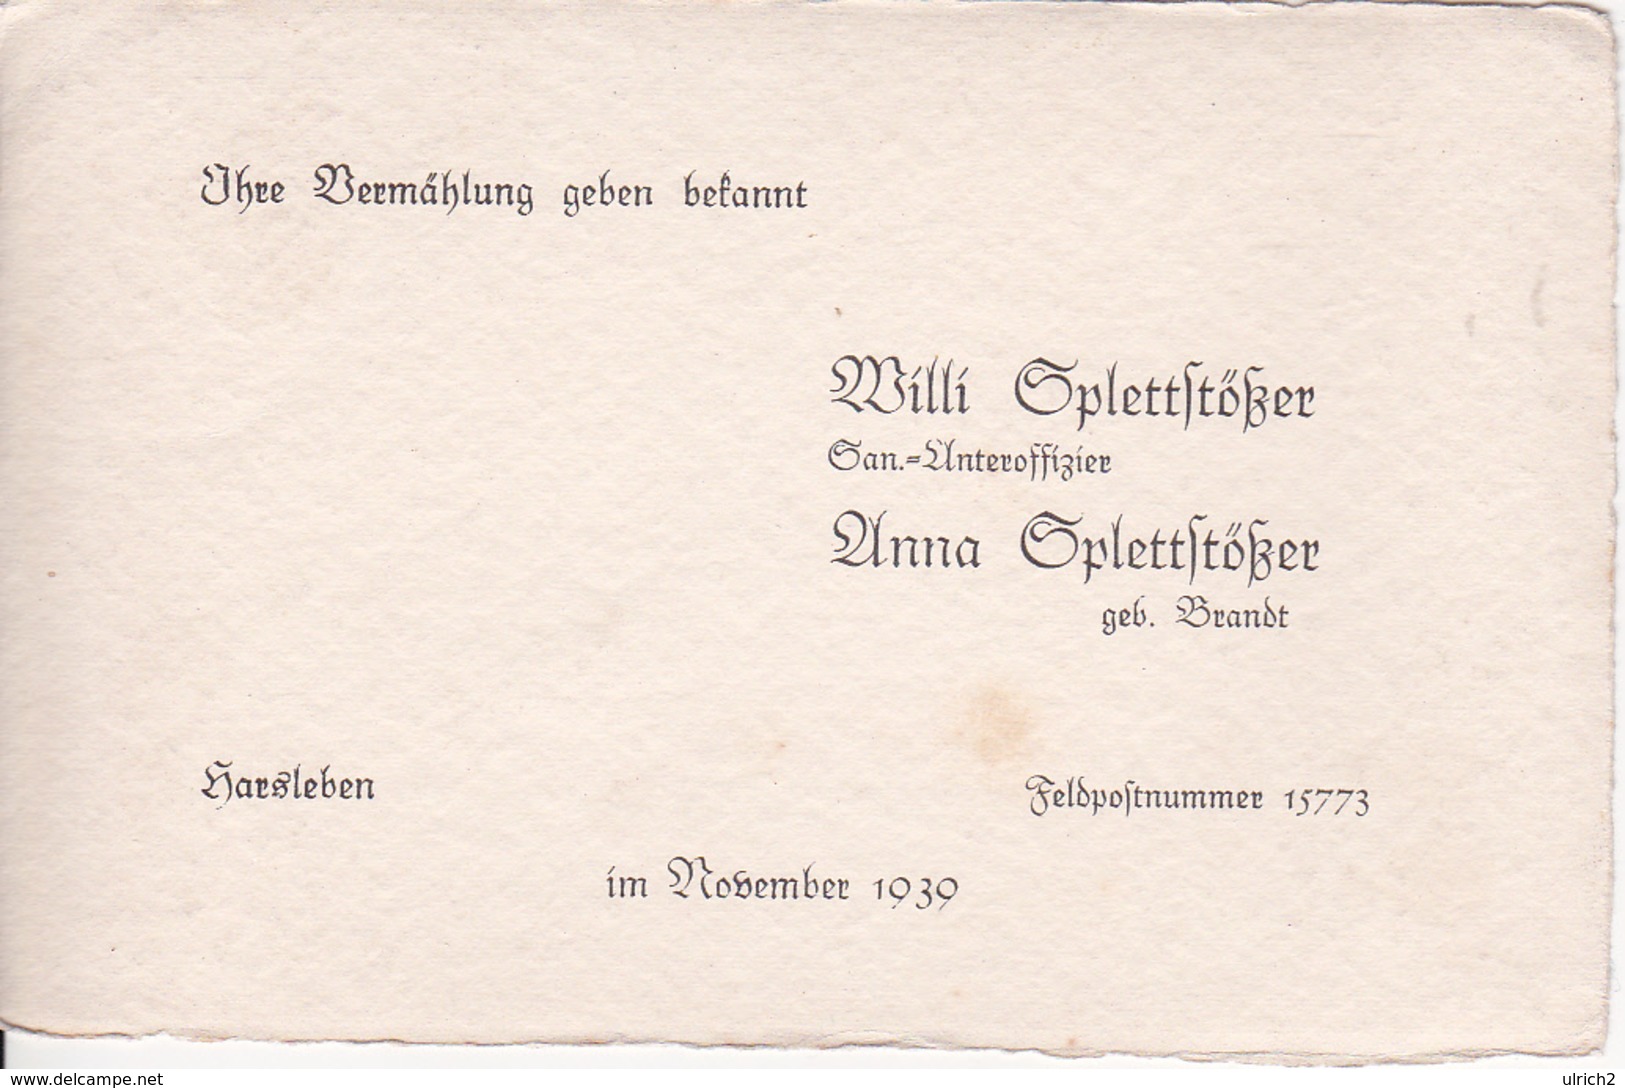 Vermählungs-Anzeige - Willi Und Anna Splettstößer - Harsleben / Feldpostnummer 15773 - November 1939 (26062) - Hochzeit